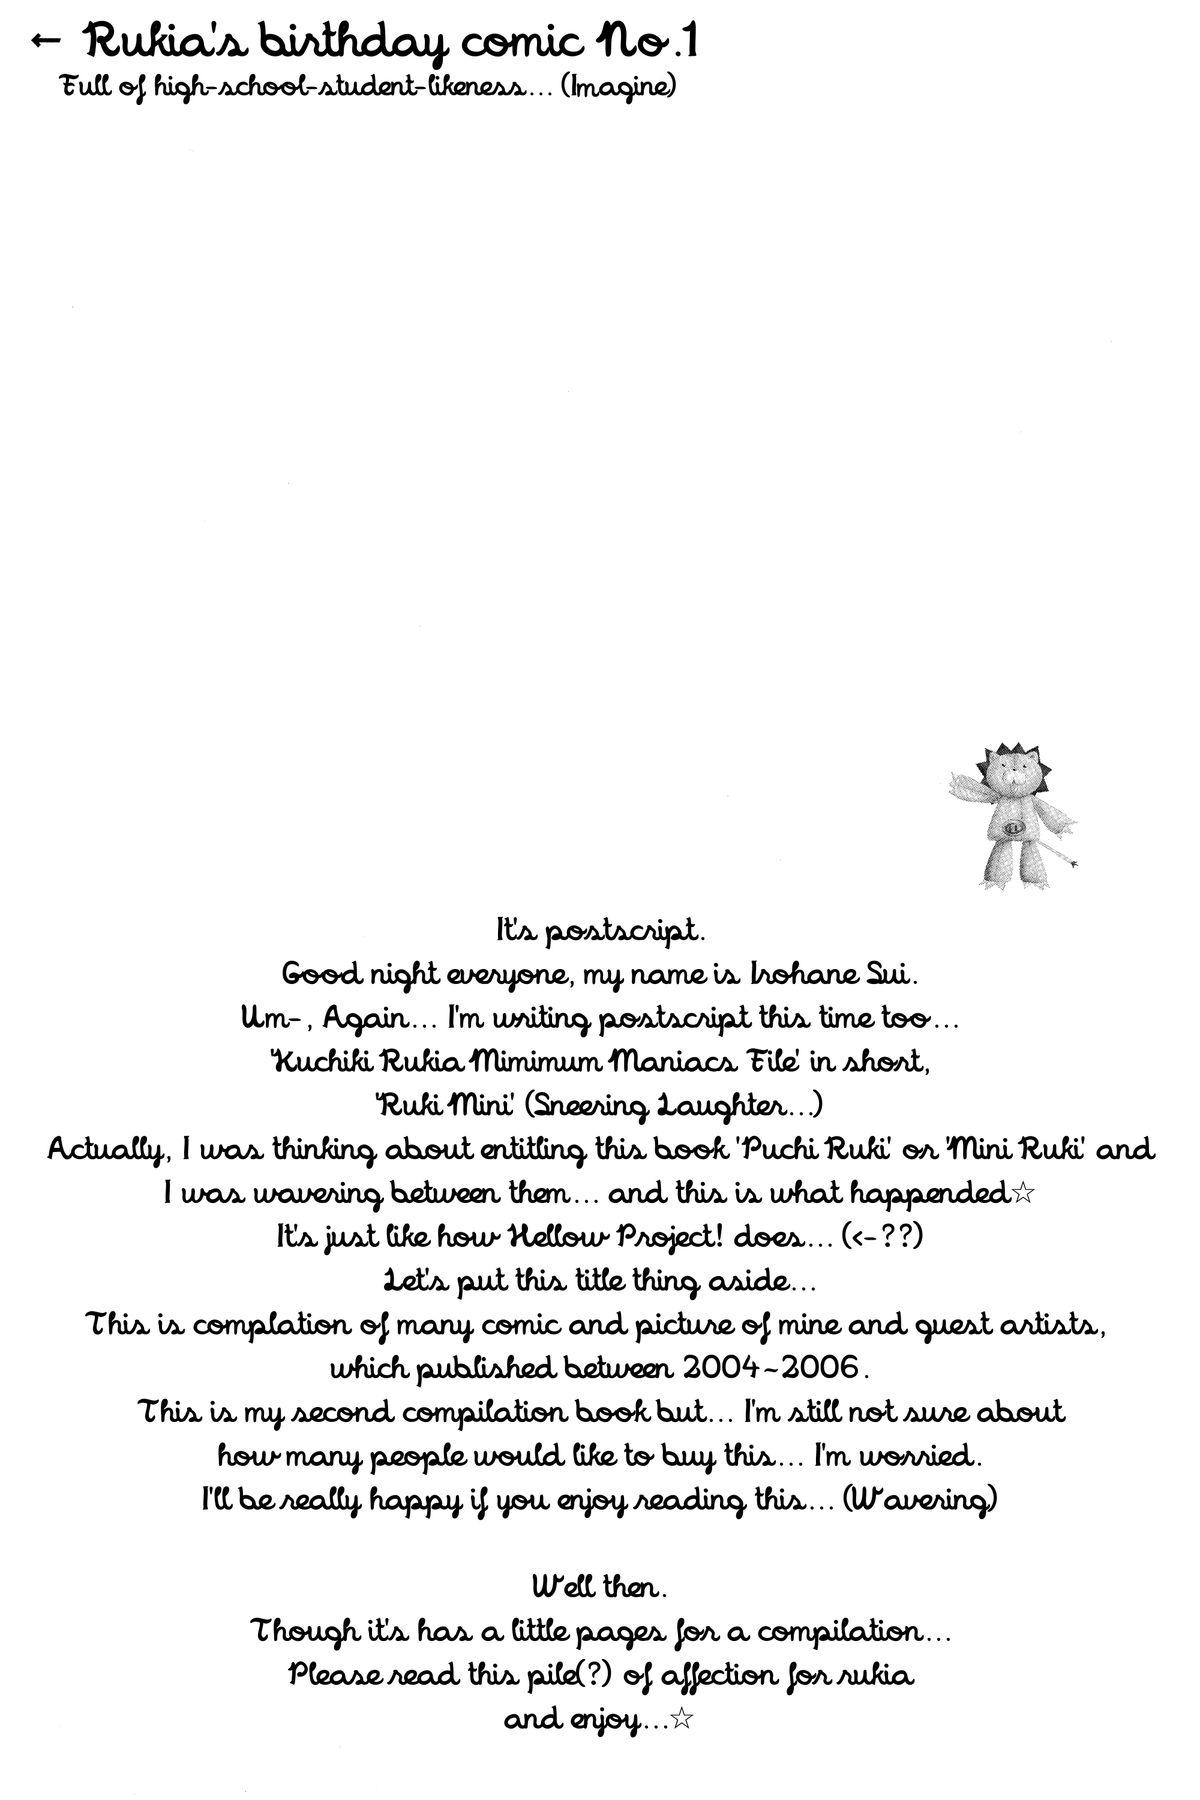 Natural Rukia Kuchiki Minimum Maniax File - Bleach Soft - Page 4